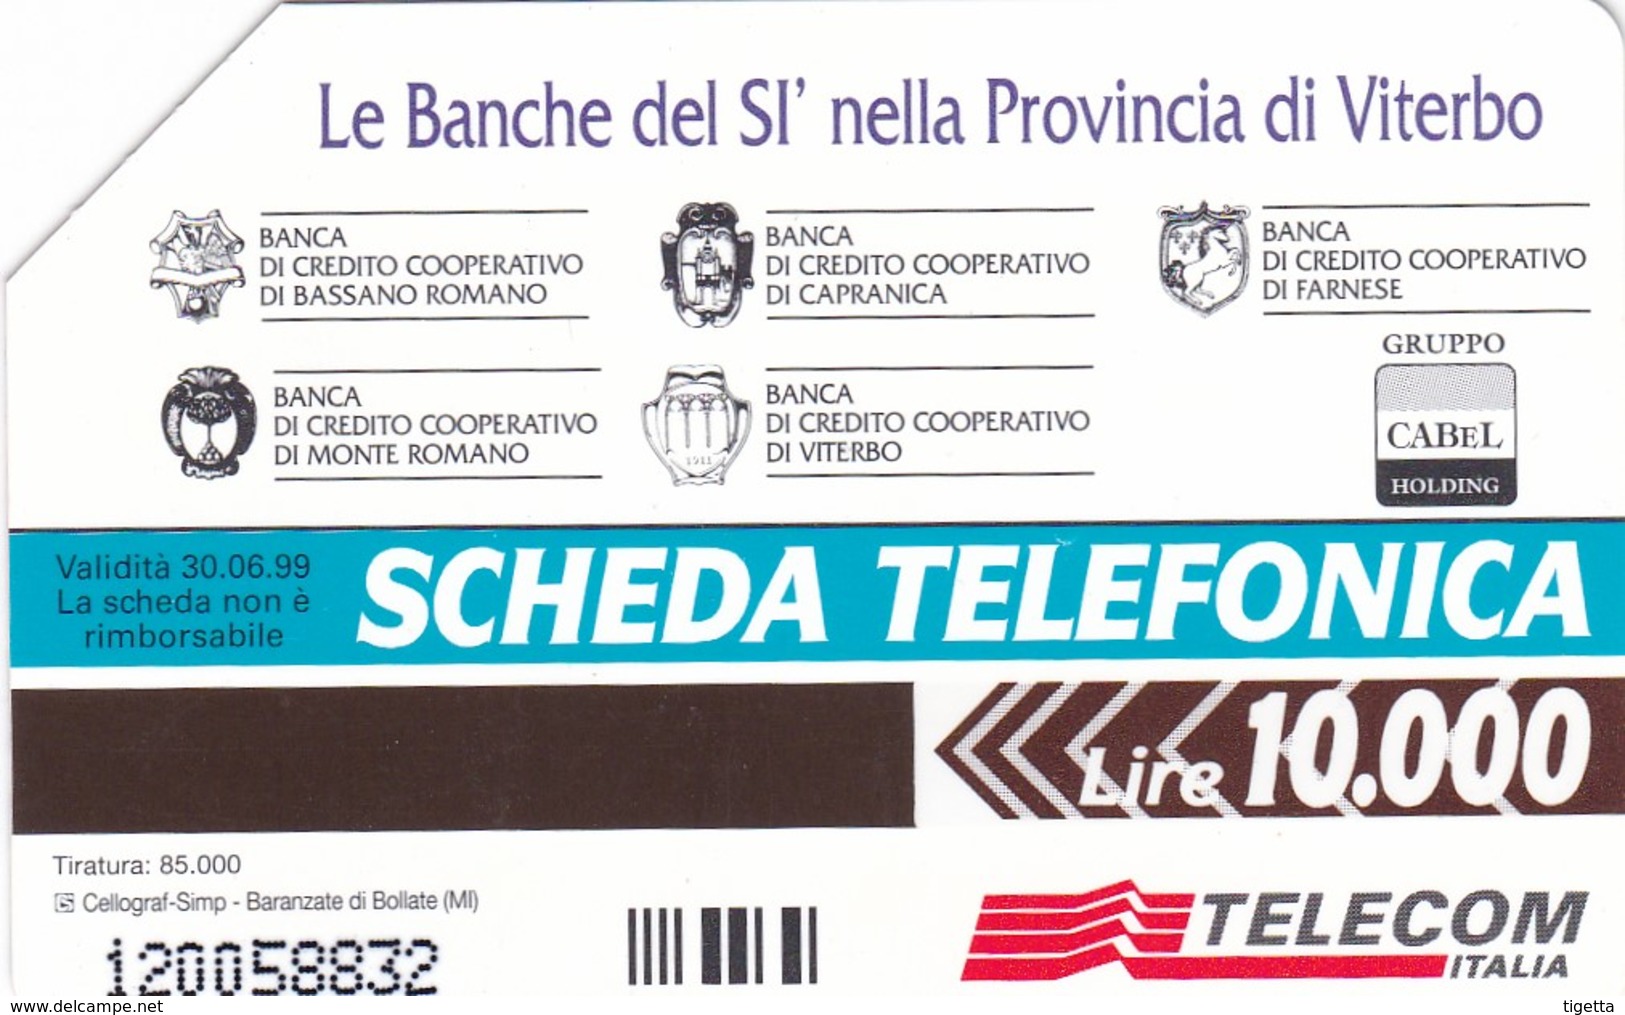 SCHEDA TELEFONICA  LE BANCHE DEL SI  SCADENZA 30/06/1999 USATA - Public Special Or Commemorative